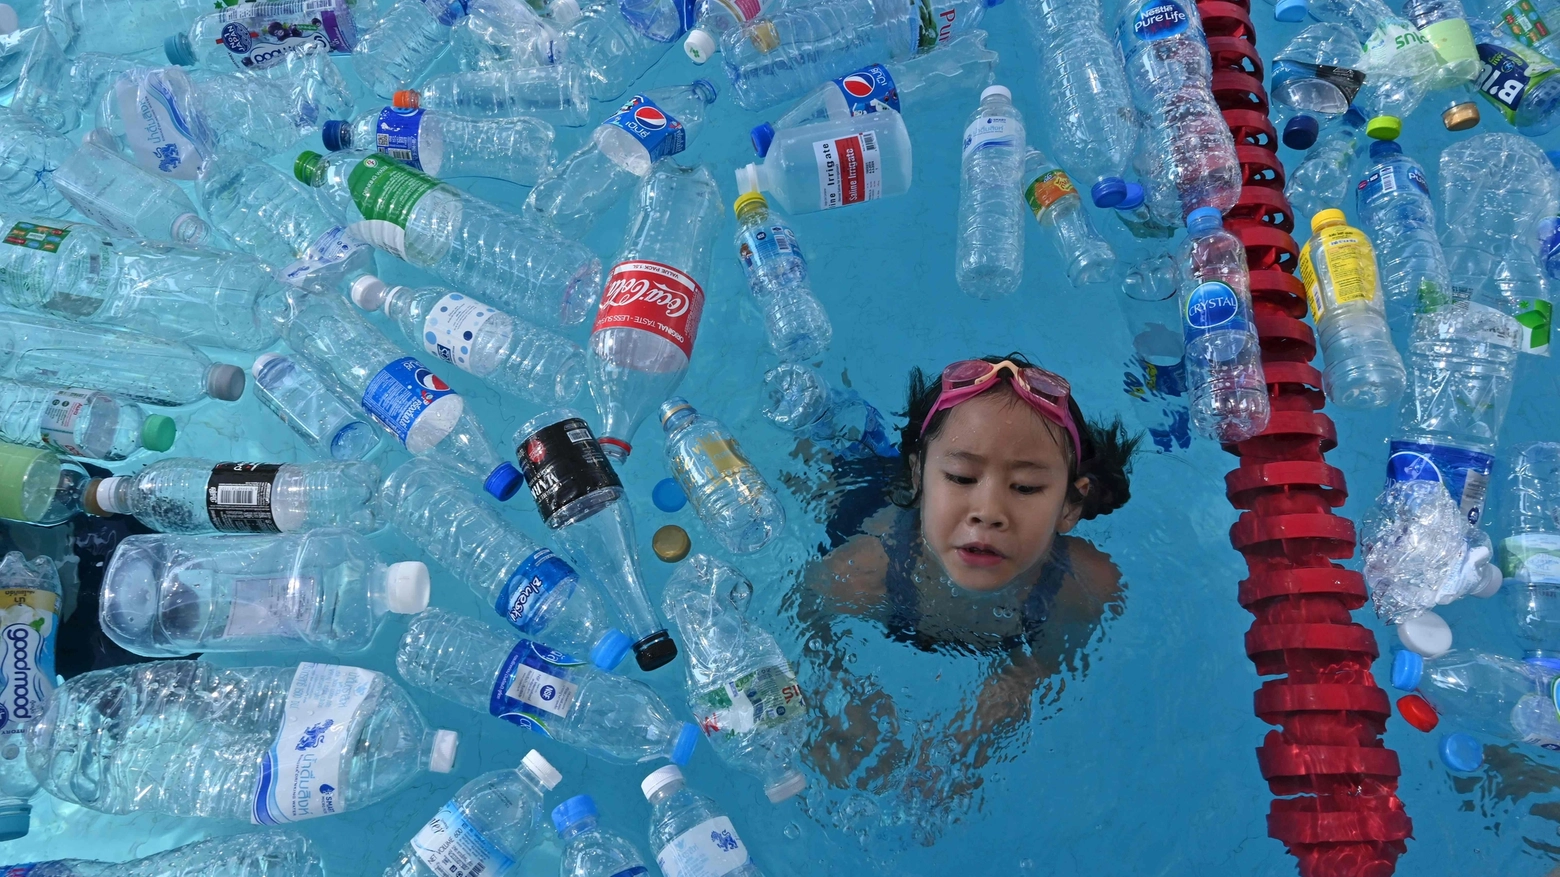 Una campagna contro l'uso della plastica, Bangkok (LaPresse)